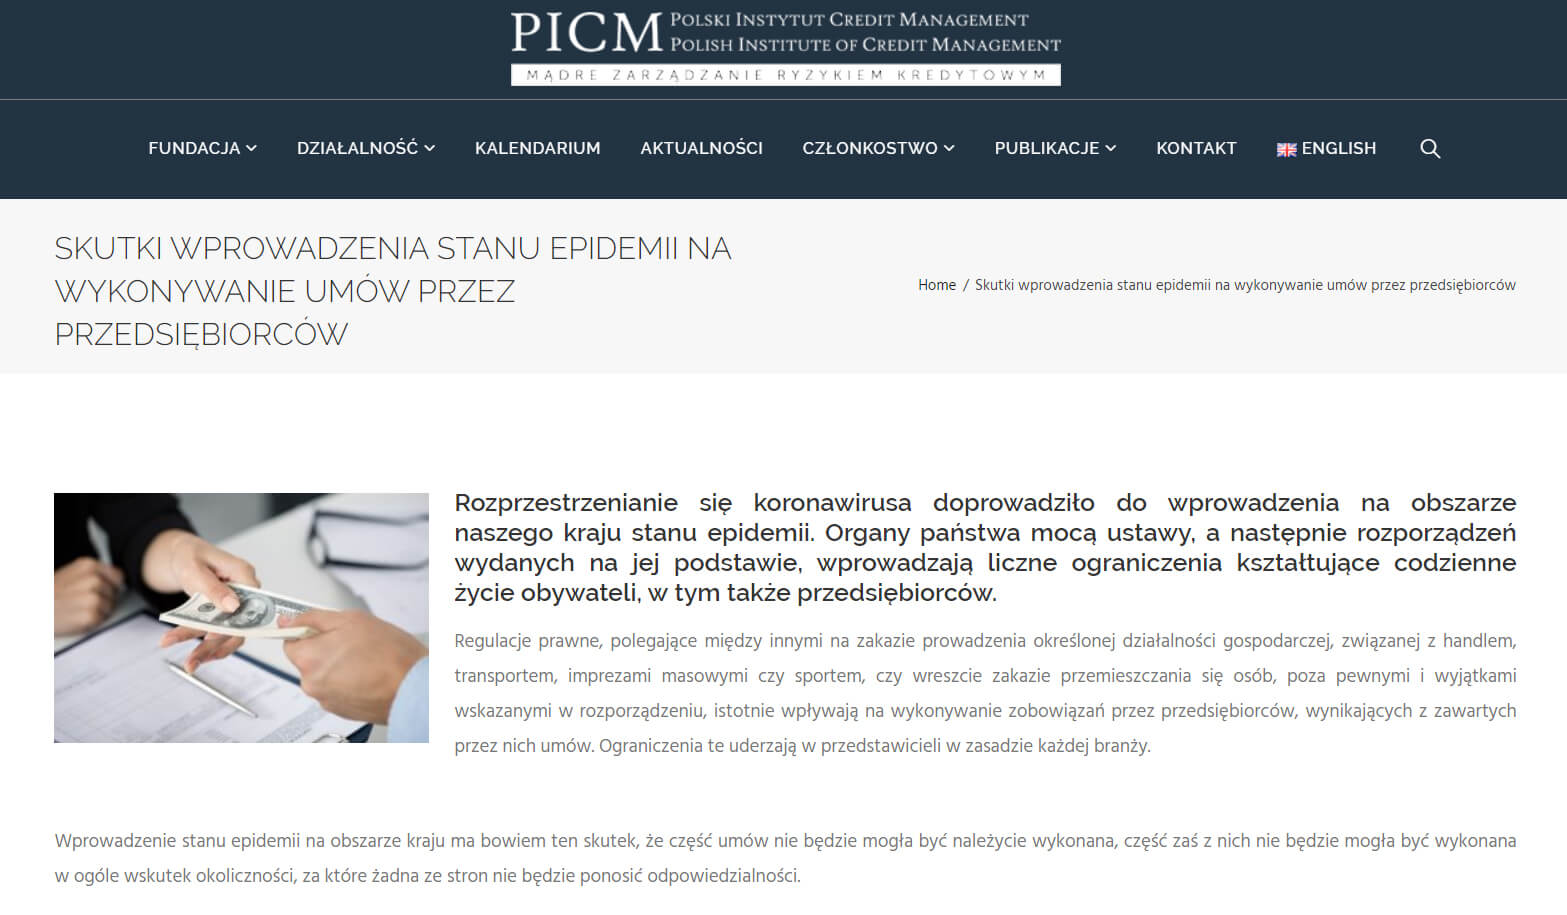 Ekspercka publikacja naszych specjalistów - w portalu PICM